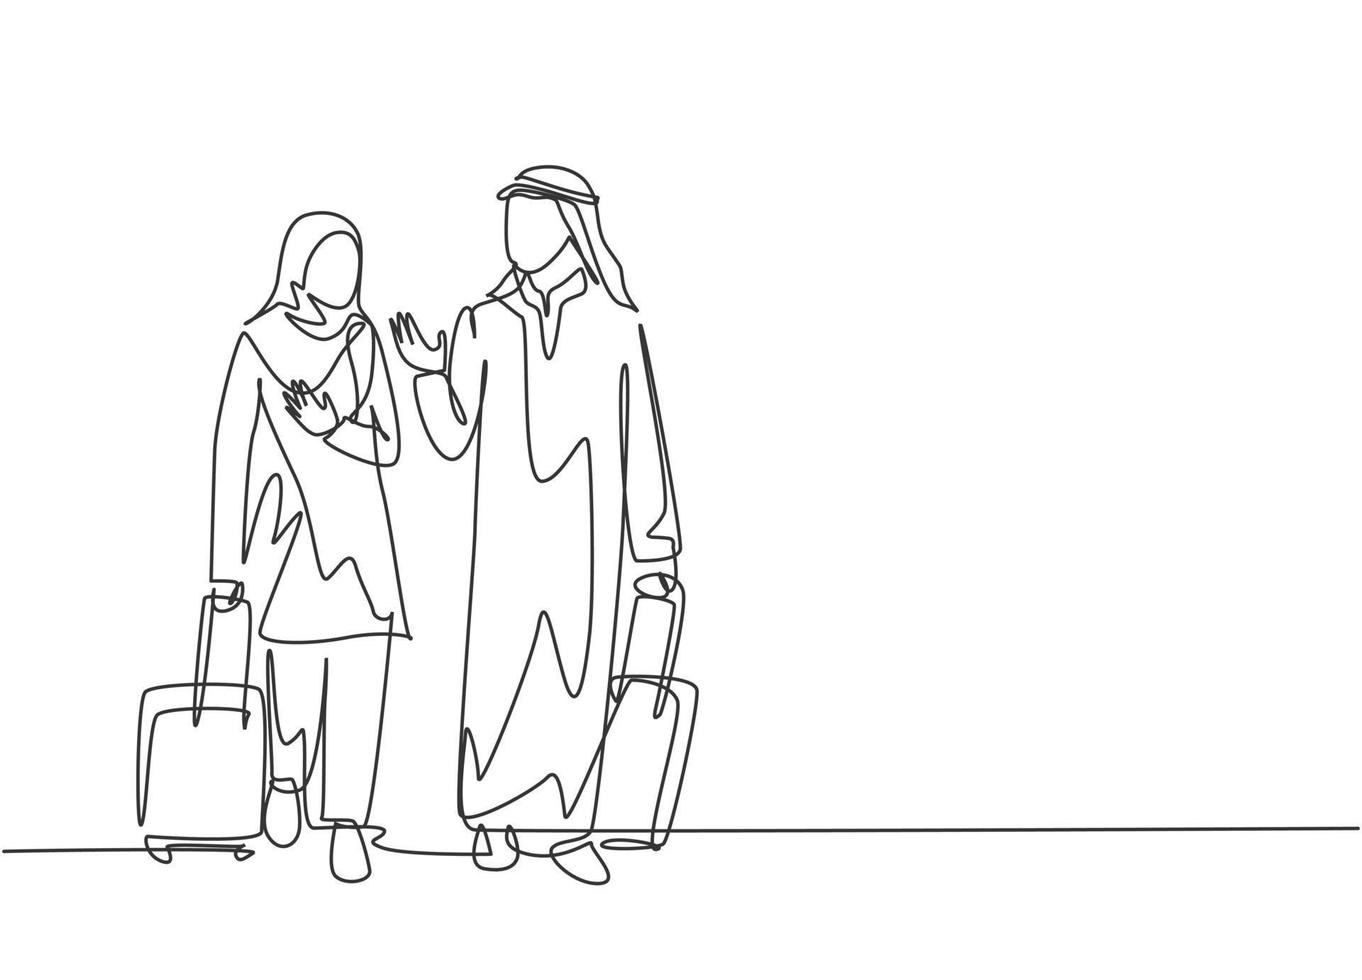 desenho de linha única contínua de jovens gerentes muçulmanos do sexo masculino e feminino conversando após uma viagem de negócios ao exterior. pano árabe do Oriente Médio kandura, thawb, hijab. ilustração em vetor desenho desenho de uma linha